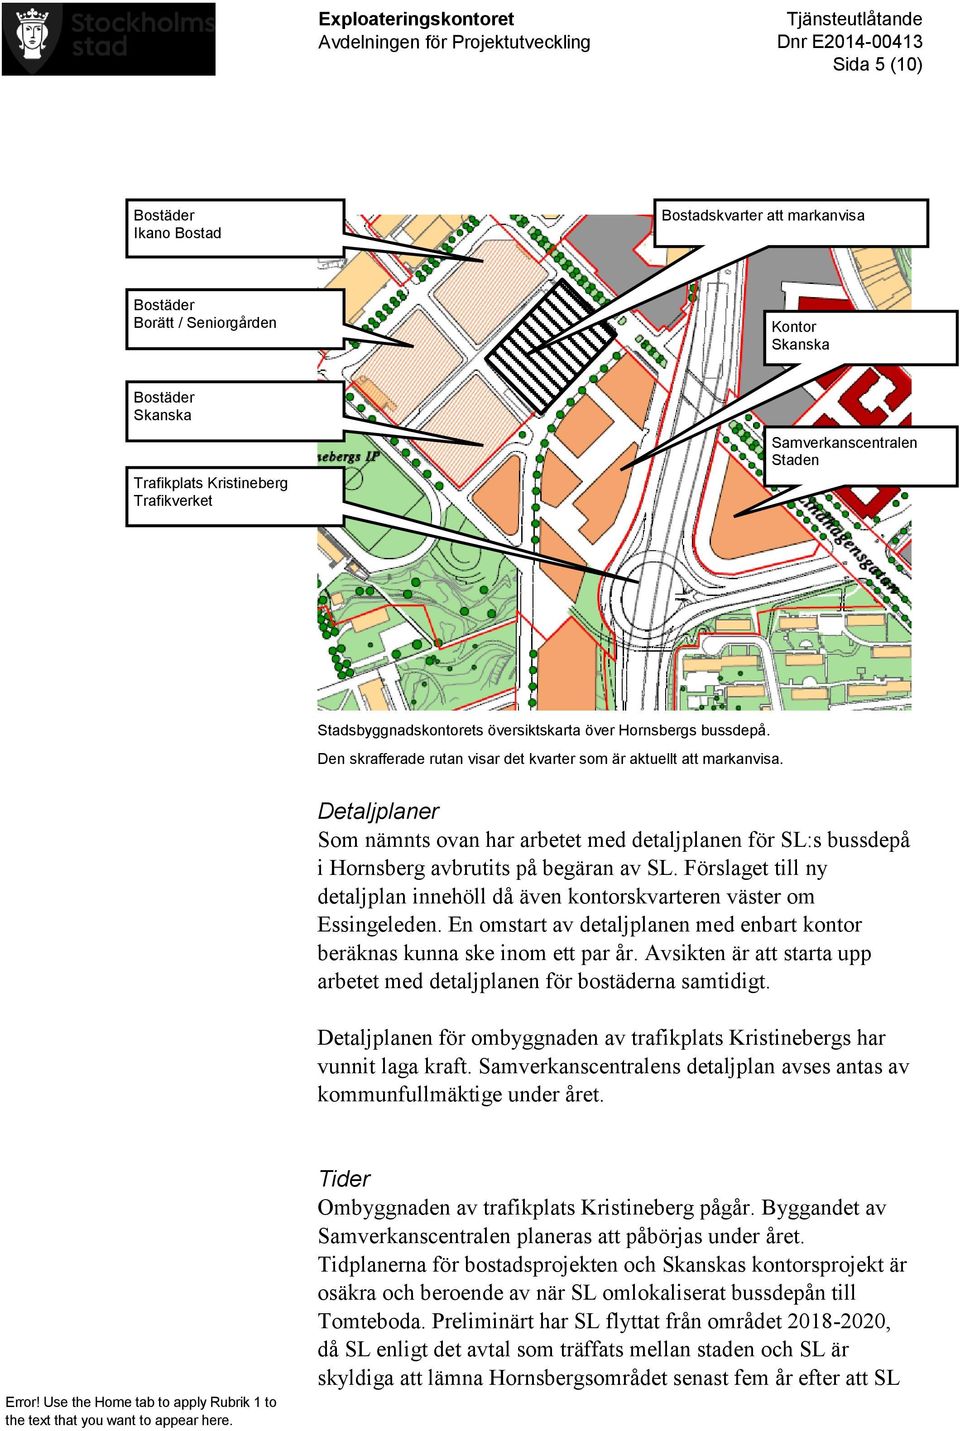 Detaljplaner Som nämnts ovan har arbetet med detaljplanen för SL:s bussdepå i Hornsberg avbrutits på begäran av SL.